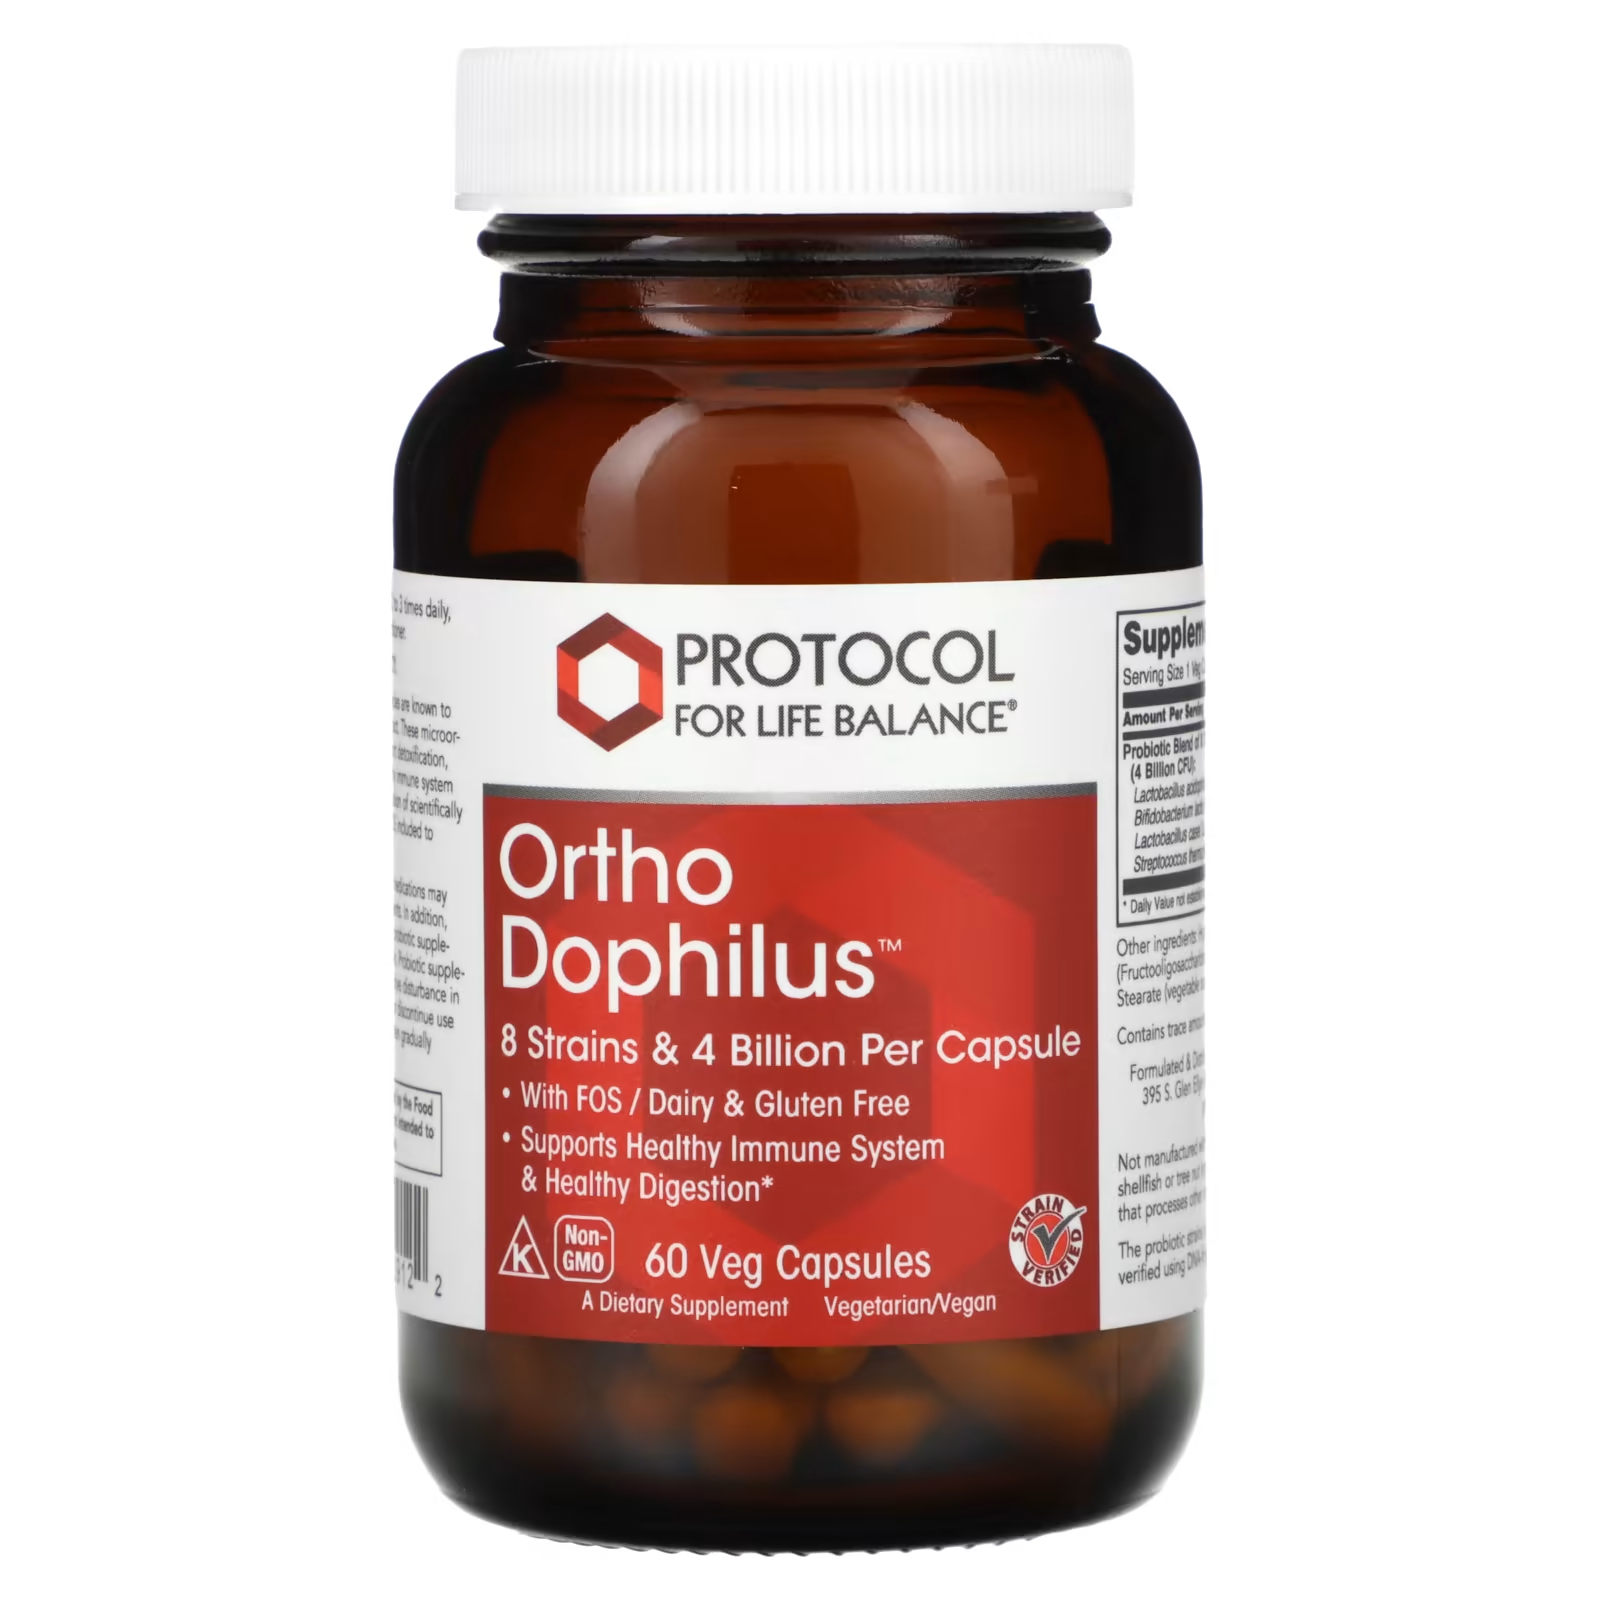 Пищевая добавка Protocol for Life Balance Ortho Dophilus, 60 капсул фото